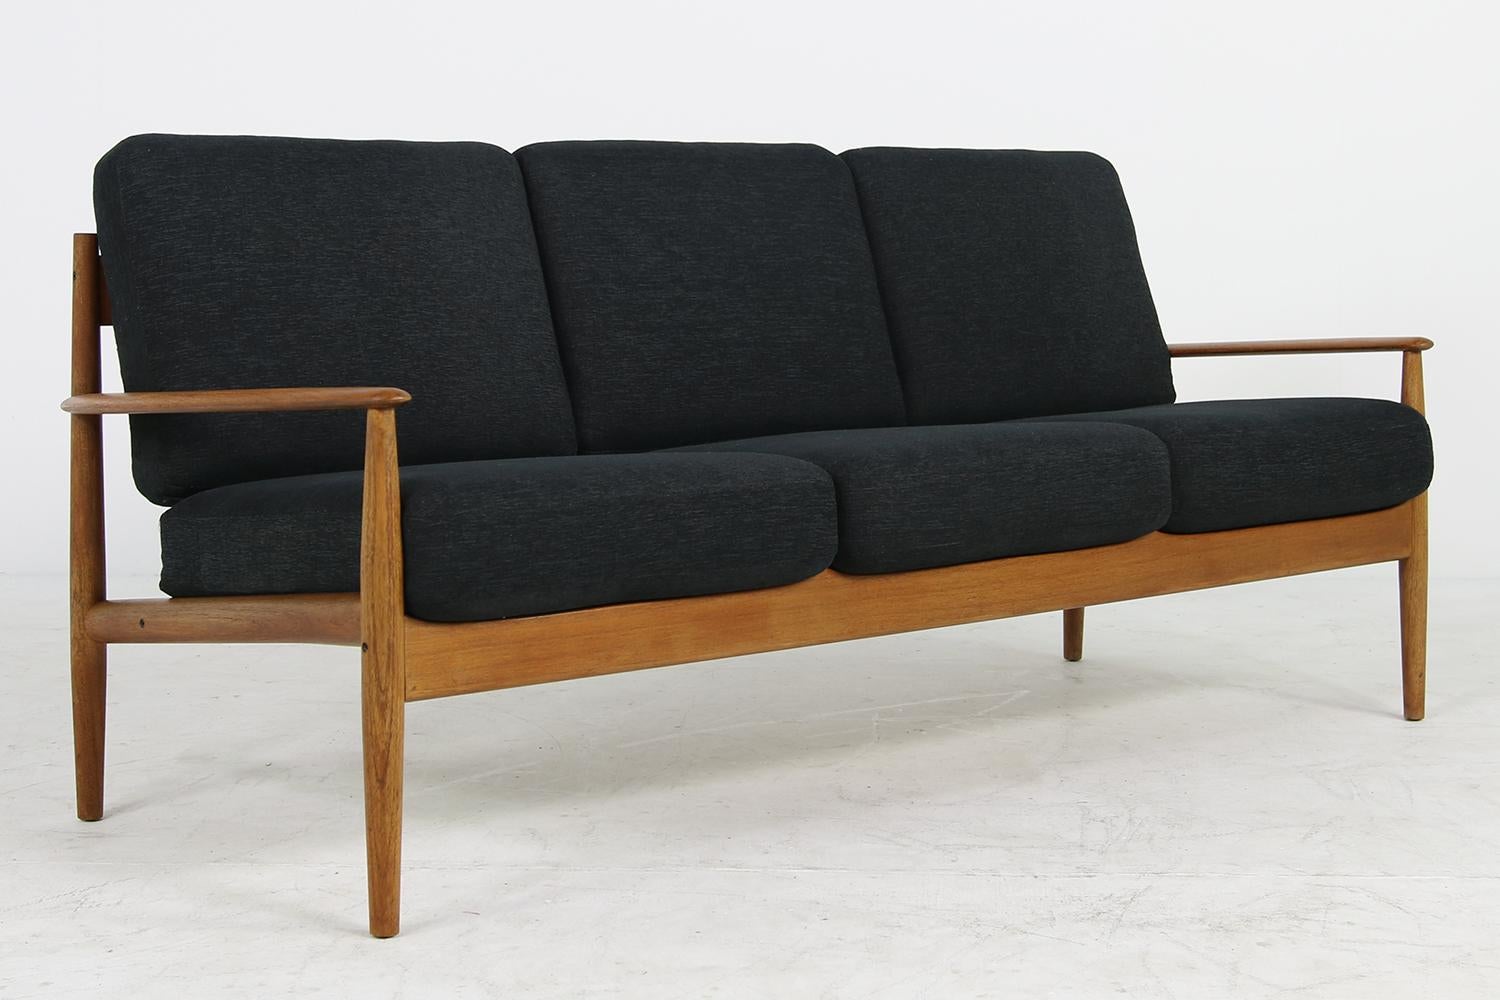 Mid-20th Century 1960s Danish Modern Teak Sofa by Grete Jalk for France & Son Model 118/3